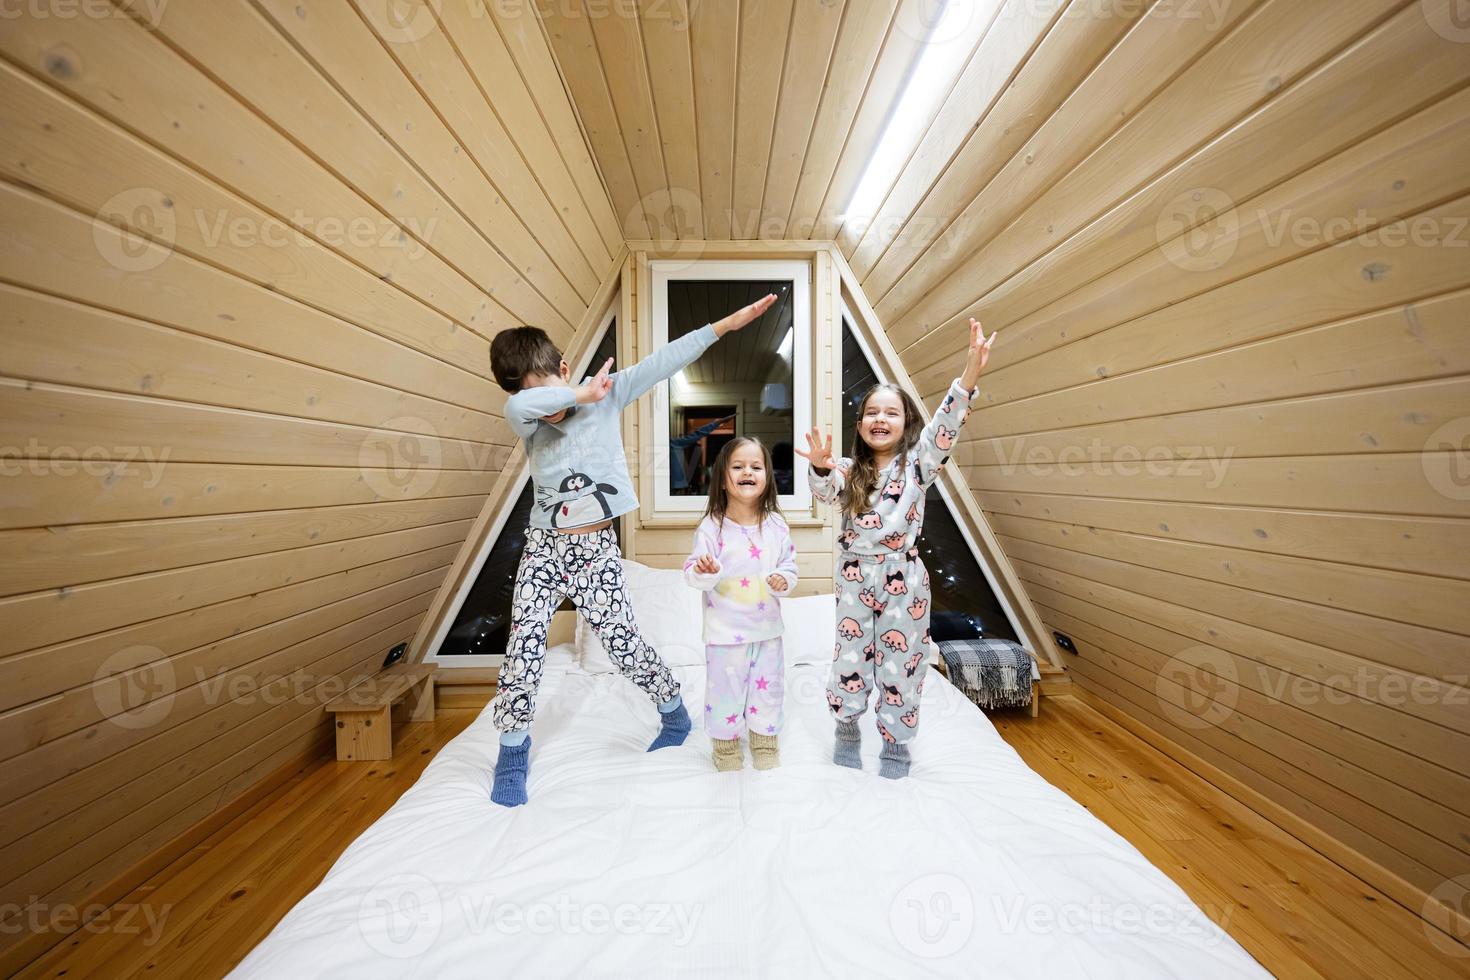 barn i mjuk värma pyjamas spelar på trä- stuga Hem. begrepp av barndom, fritid aktivitet, lycka. bror och systrar har roligt och spelar tillsammans. foto